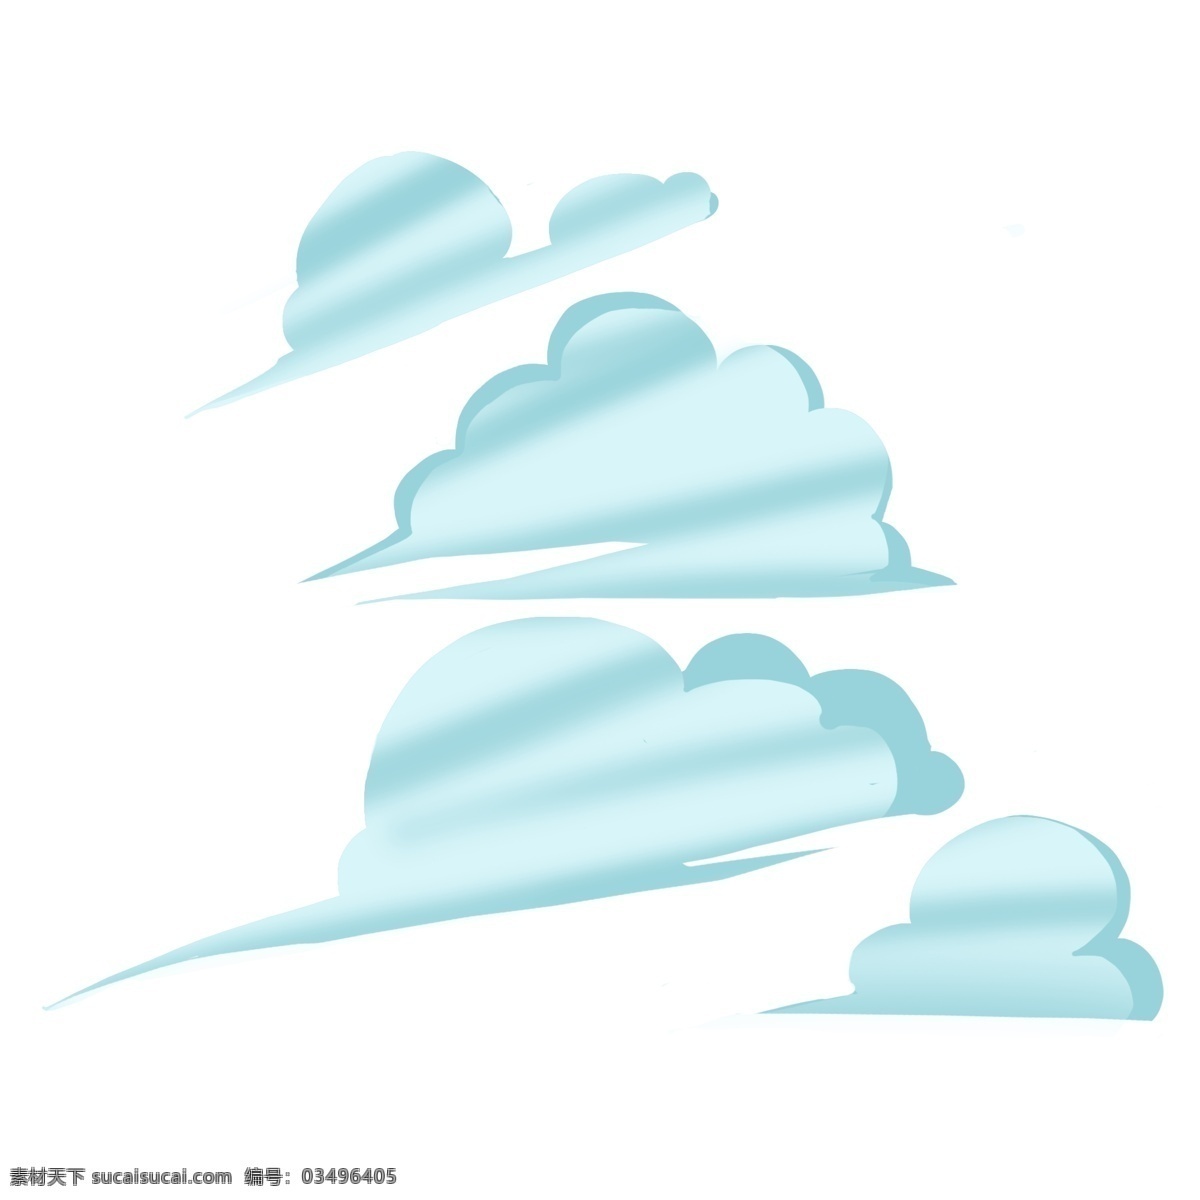 云朵 手绘 卡通 系列 装饰画 美好 寓意 淡雅 点缀 颜色 朴素 蓬松 卡通风格 白云朵朵 蓝色云彩